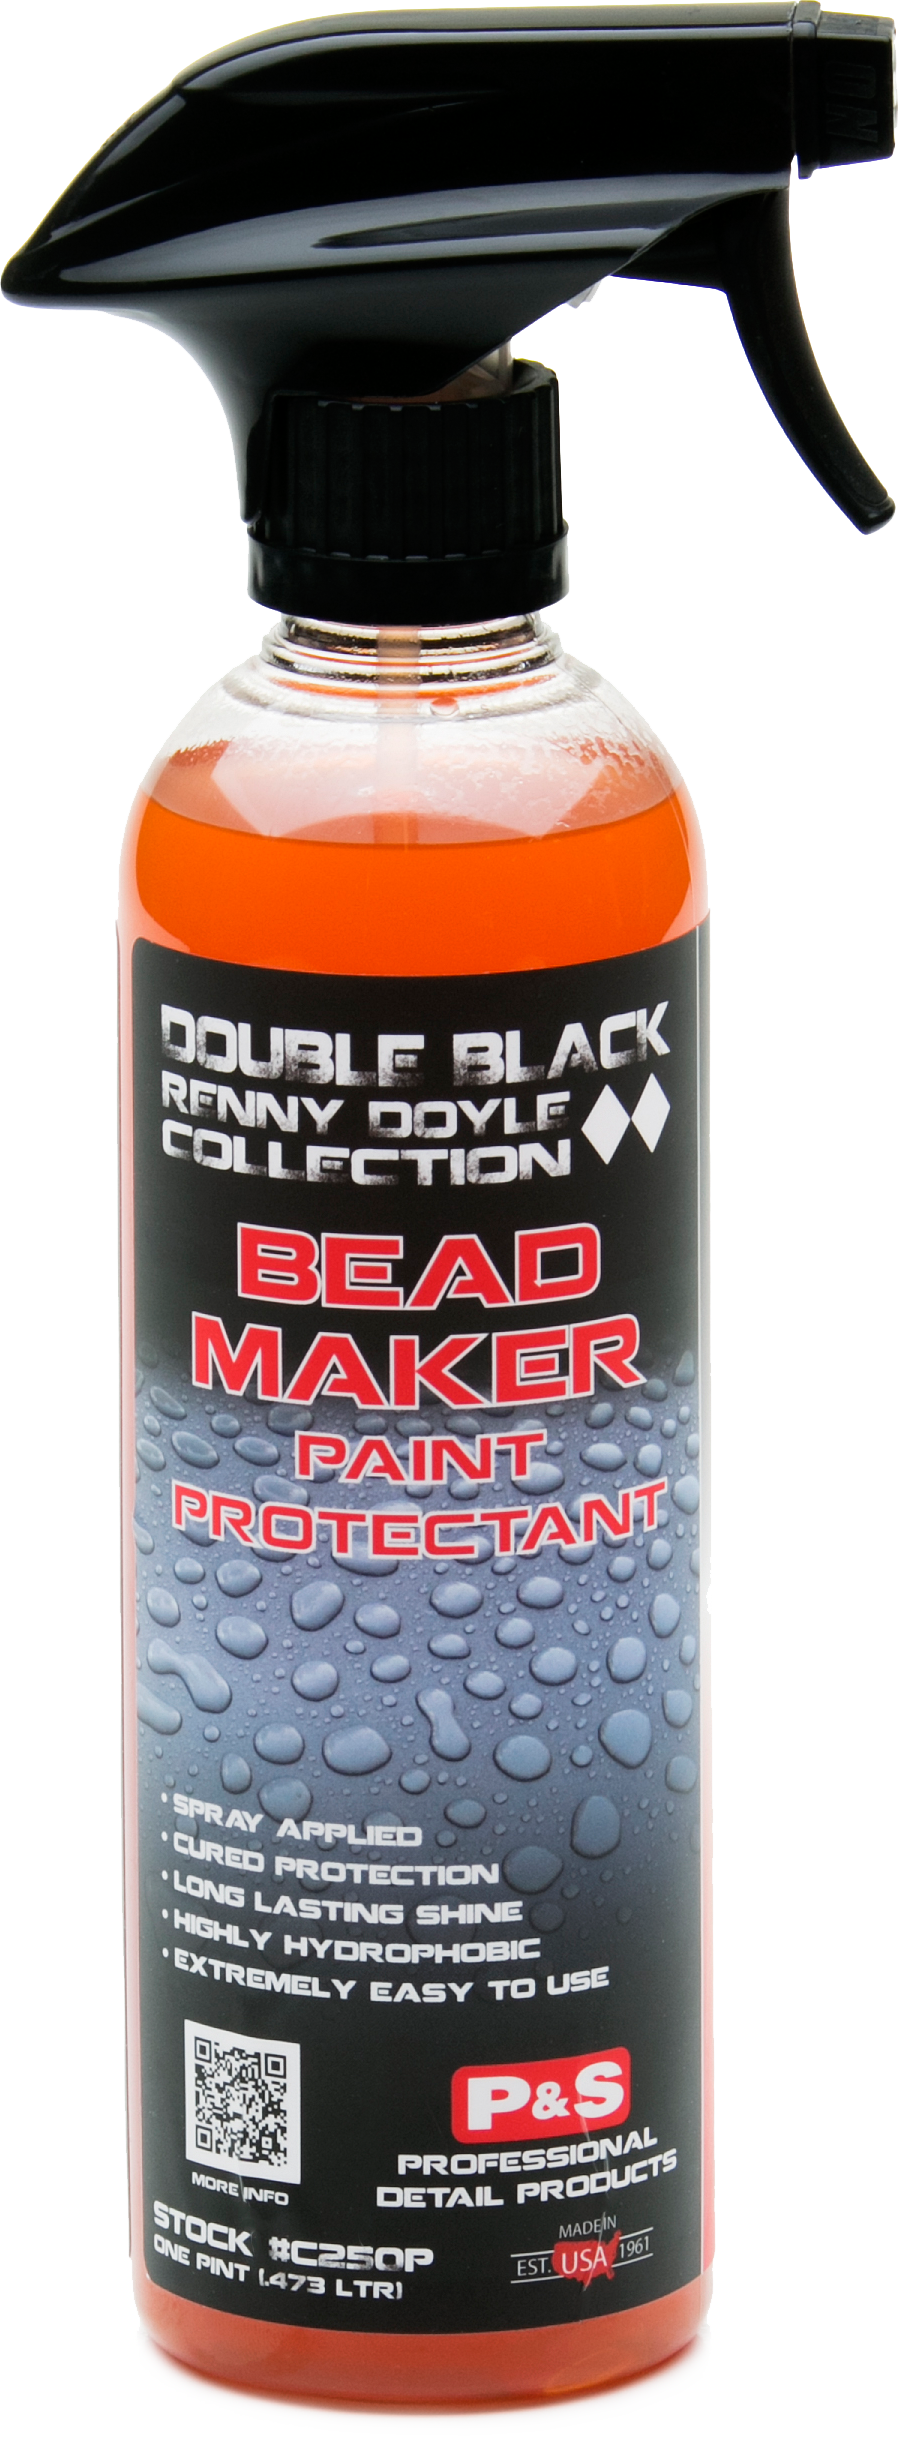 P&S Bead Maker Paint Protectant - 5 Gallon 